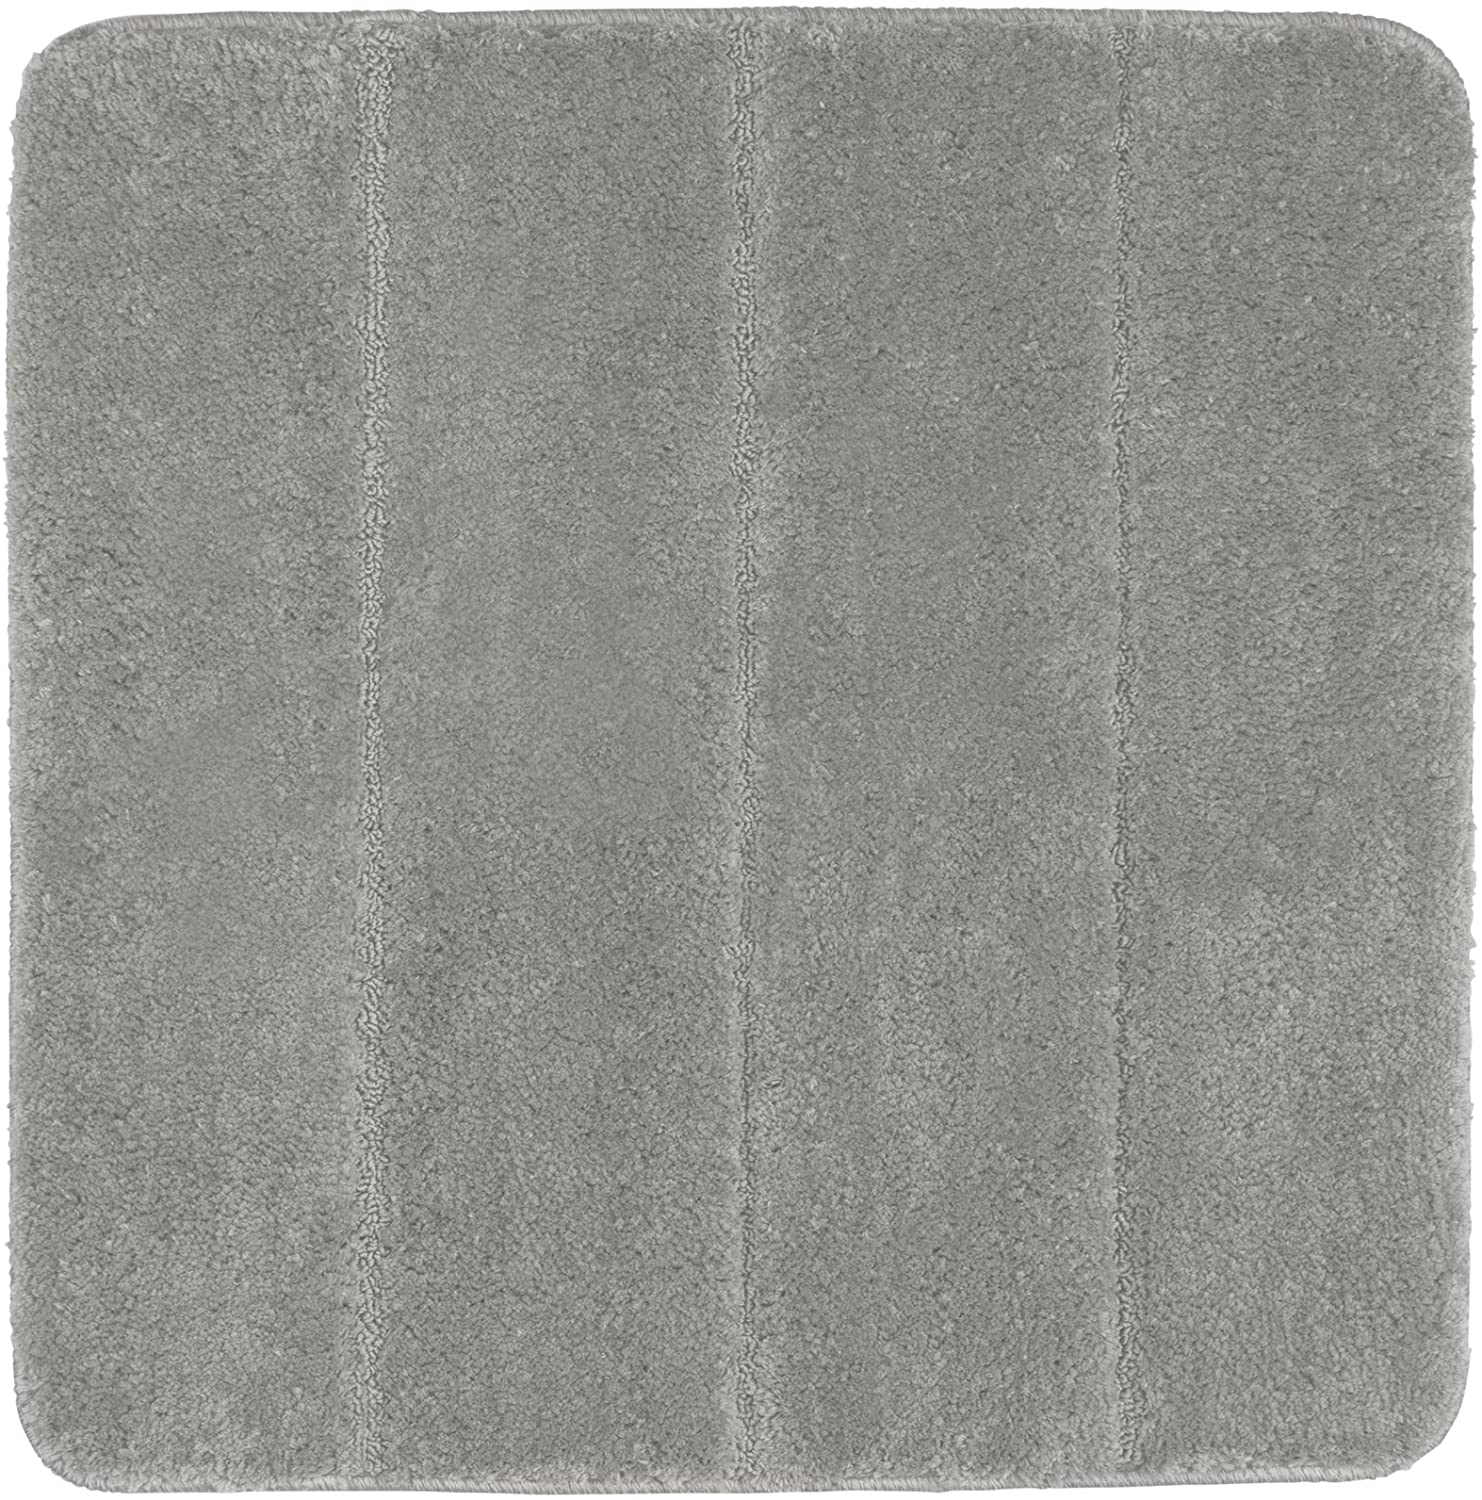 Badteppich Steps Light Grey, 55 x 65 cm - Badematte, rutschhemmend, außergewöhnlich weiche und dichte Qualität, Polyester, 55 x 65 cm, Hellgrau